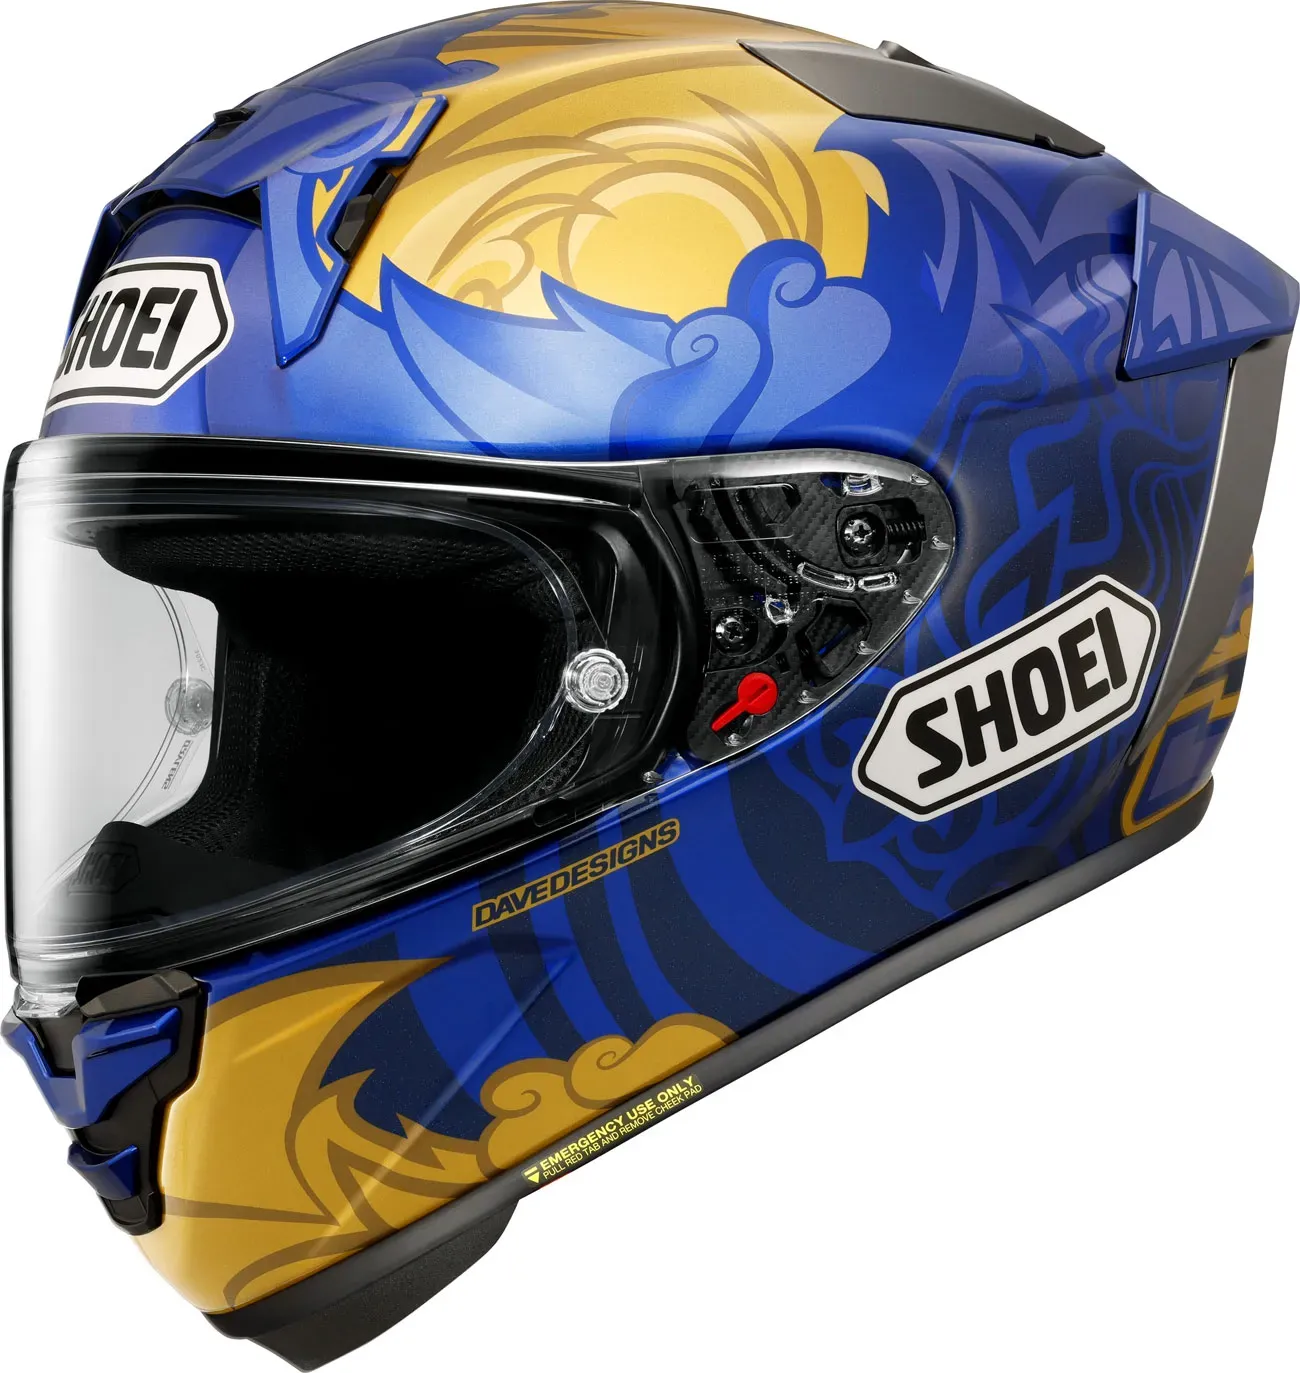 Shoei X-SPR Pro Marquez Thai, casque intégral - Bleu/Or - XS